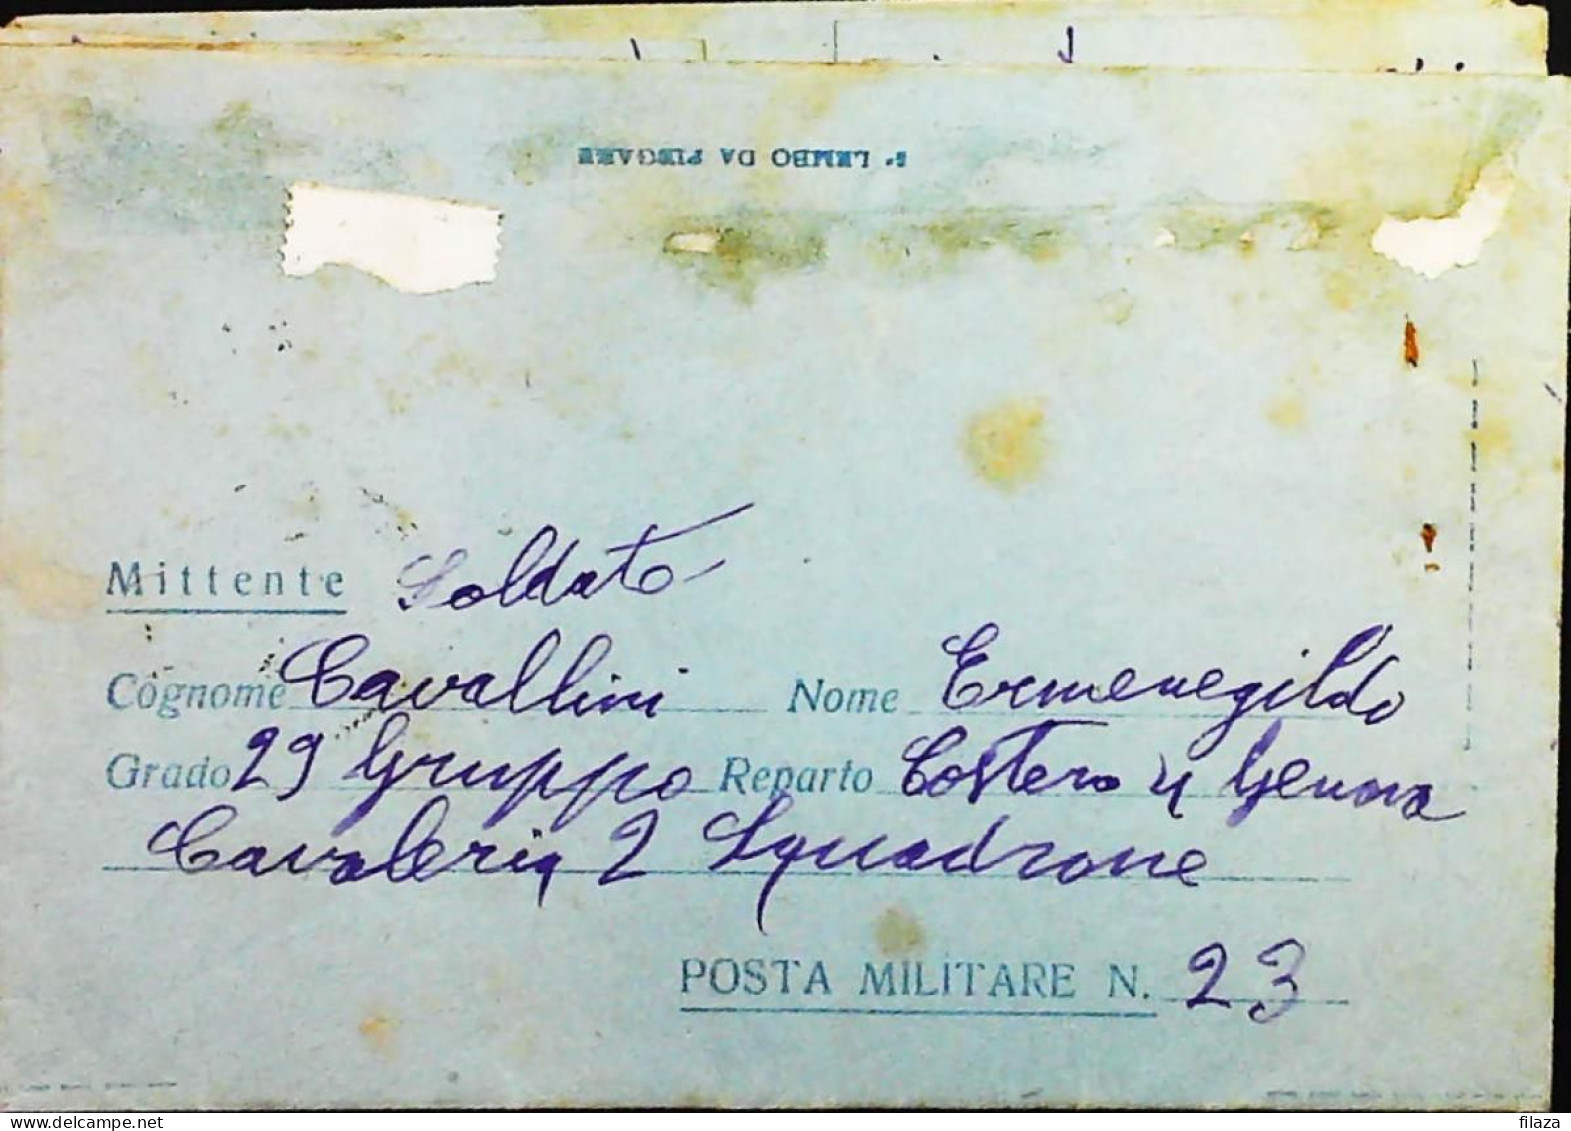 POSTA MILITARE ITALIA IN GRECIA  - WWII WW2 - S6795 - Military Mail (PM)